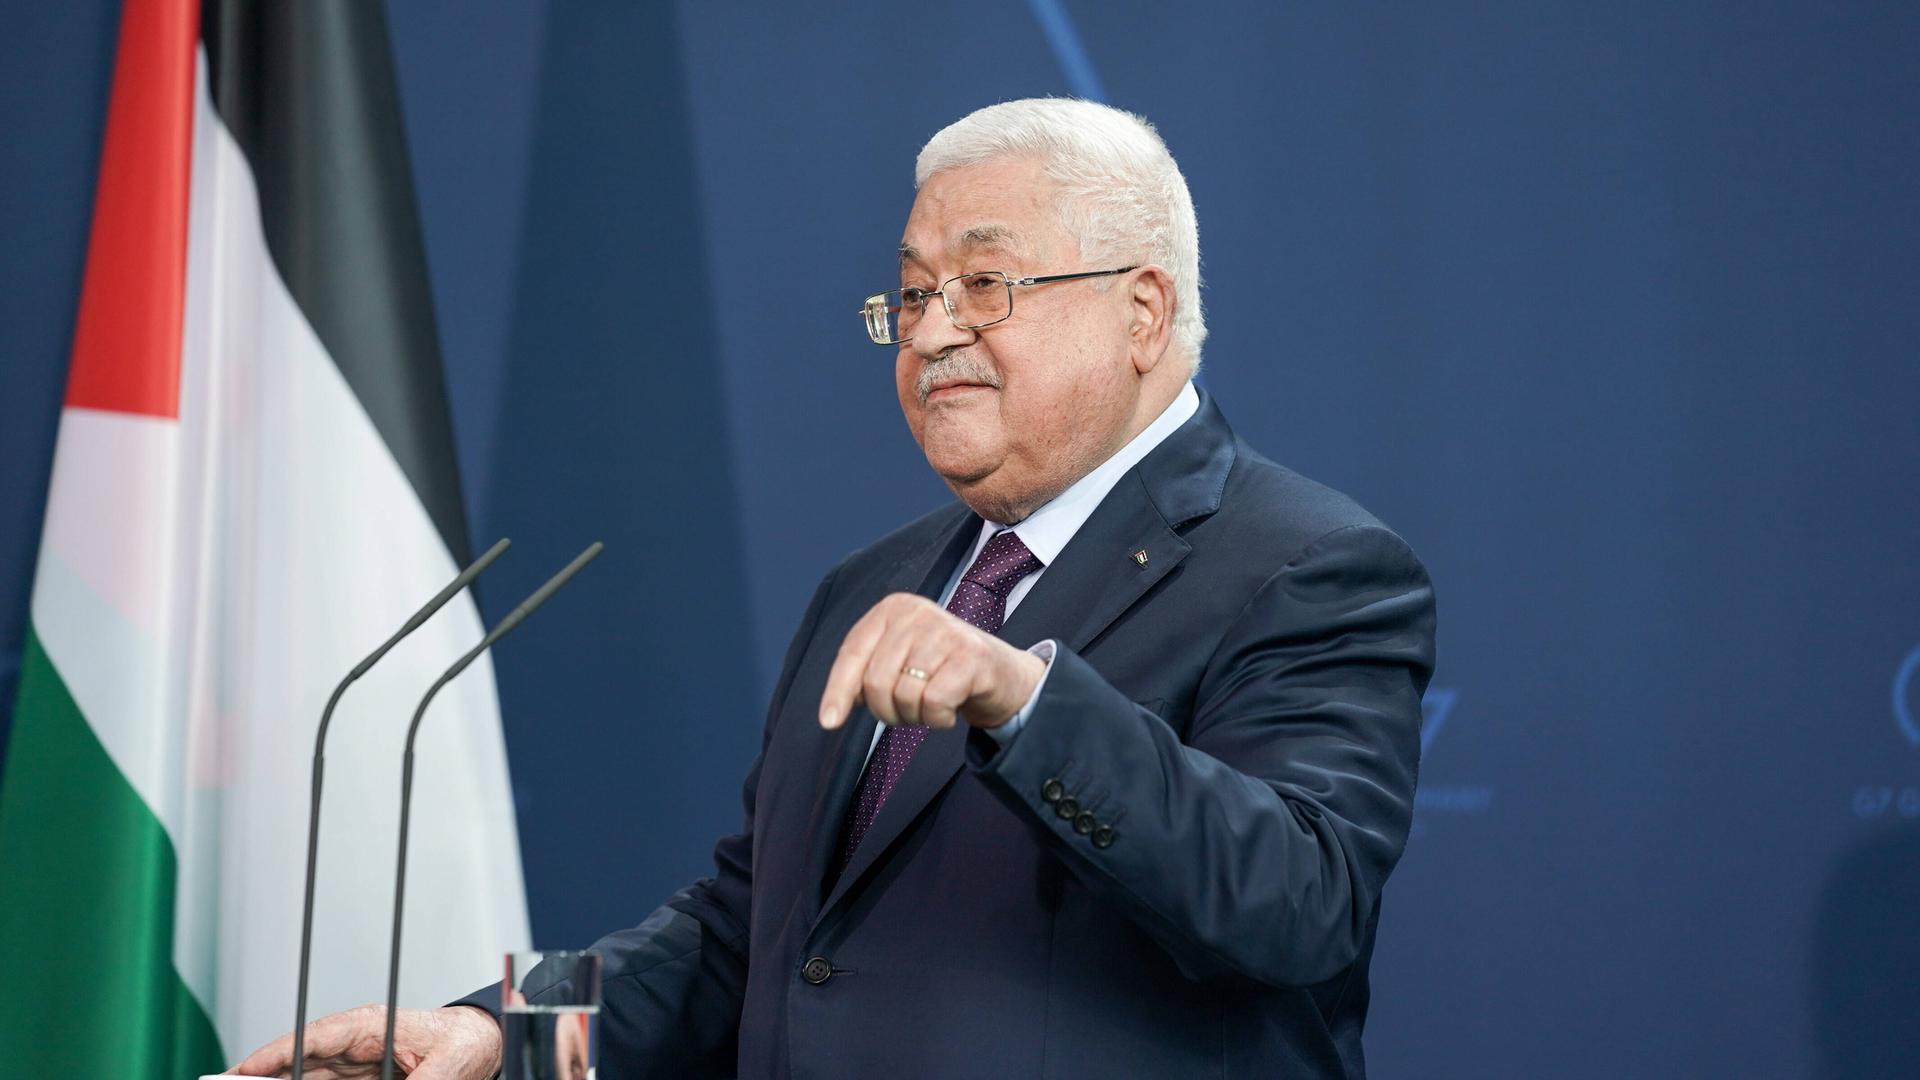 Der Präsident der Palästinensischen Autonomiebehörde Mahmoud Abbas steht vor einem Mikrofon, in Hintergrund die palästinensische Flagge.